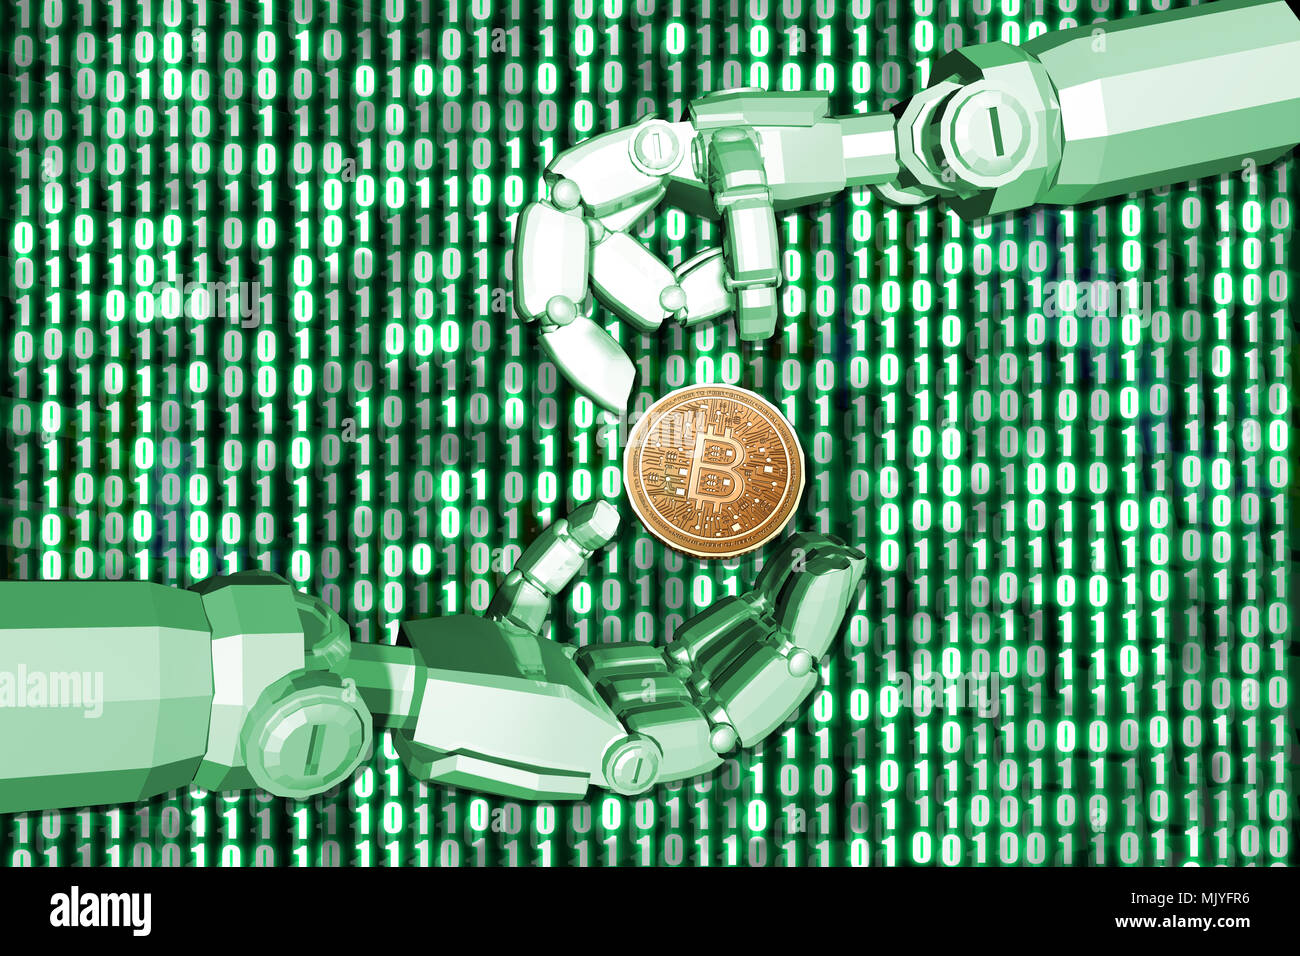 Le rendu 3D,Green theme Main du robot bitcion envoyer à un autre robot avec arrière-plan numérique 0 et 1, des finances concept. Banque D'Images